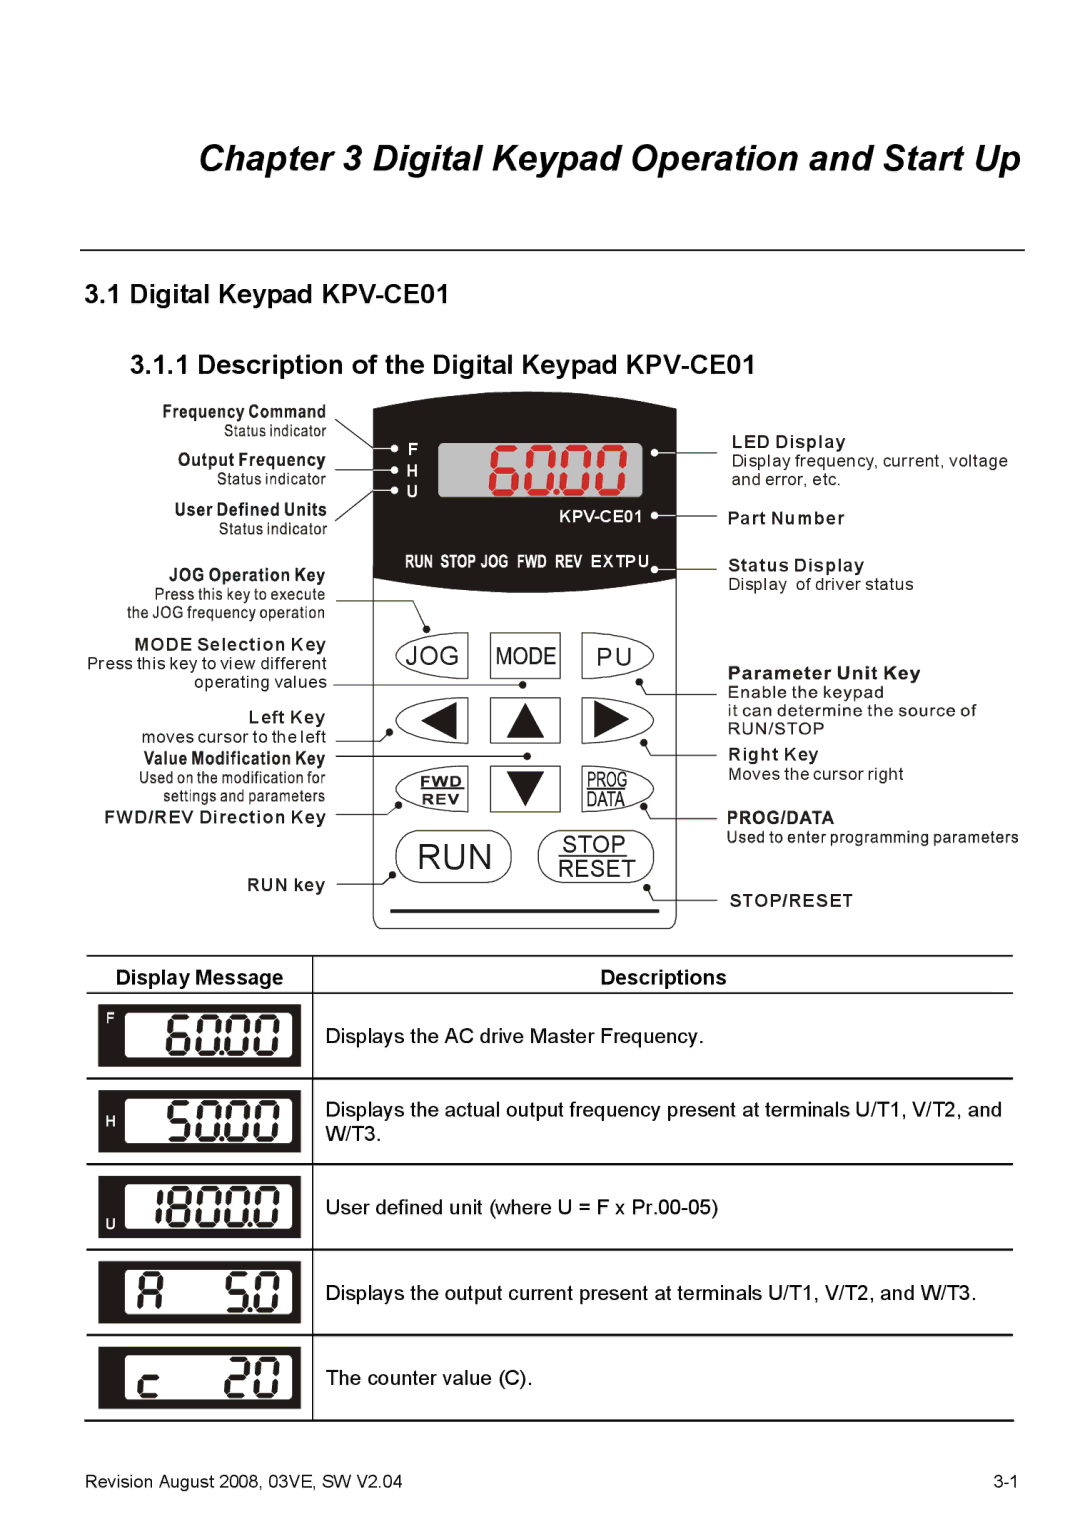 Delta Electronics VFD-VE Series manual Display Message, Descriptions 